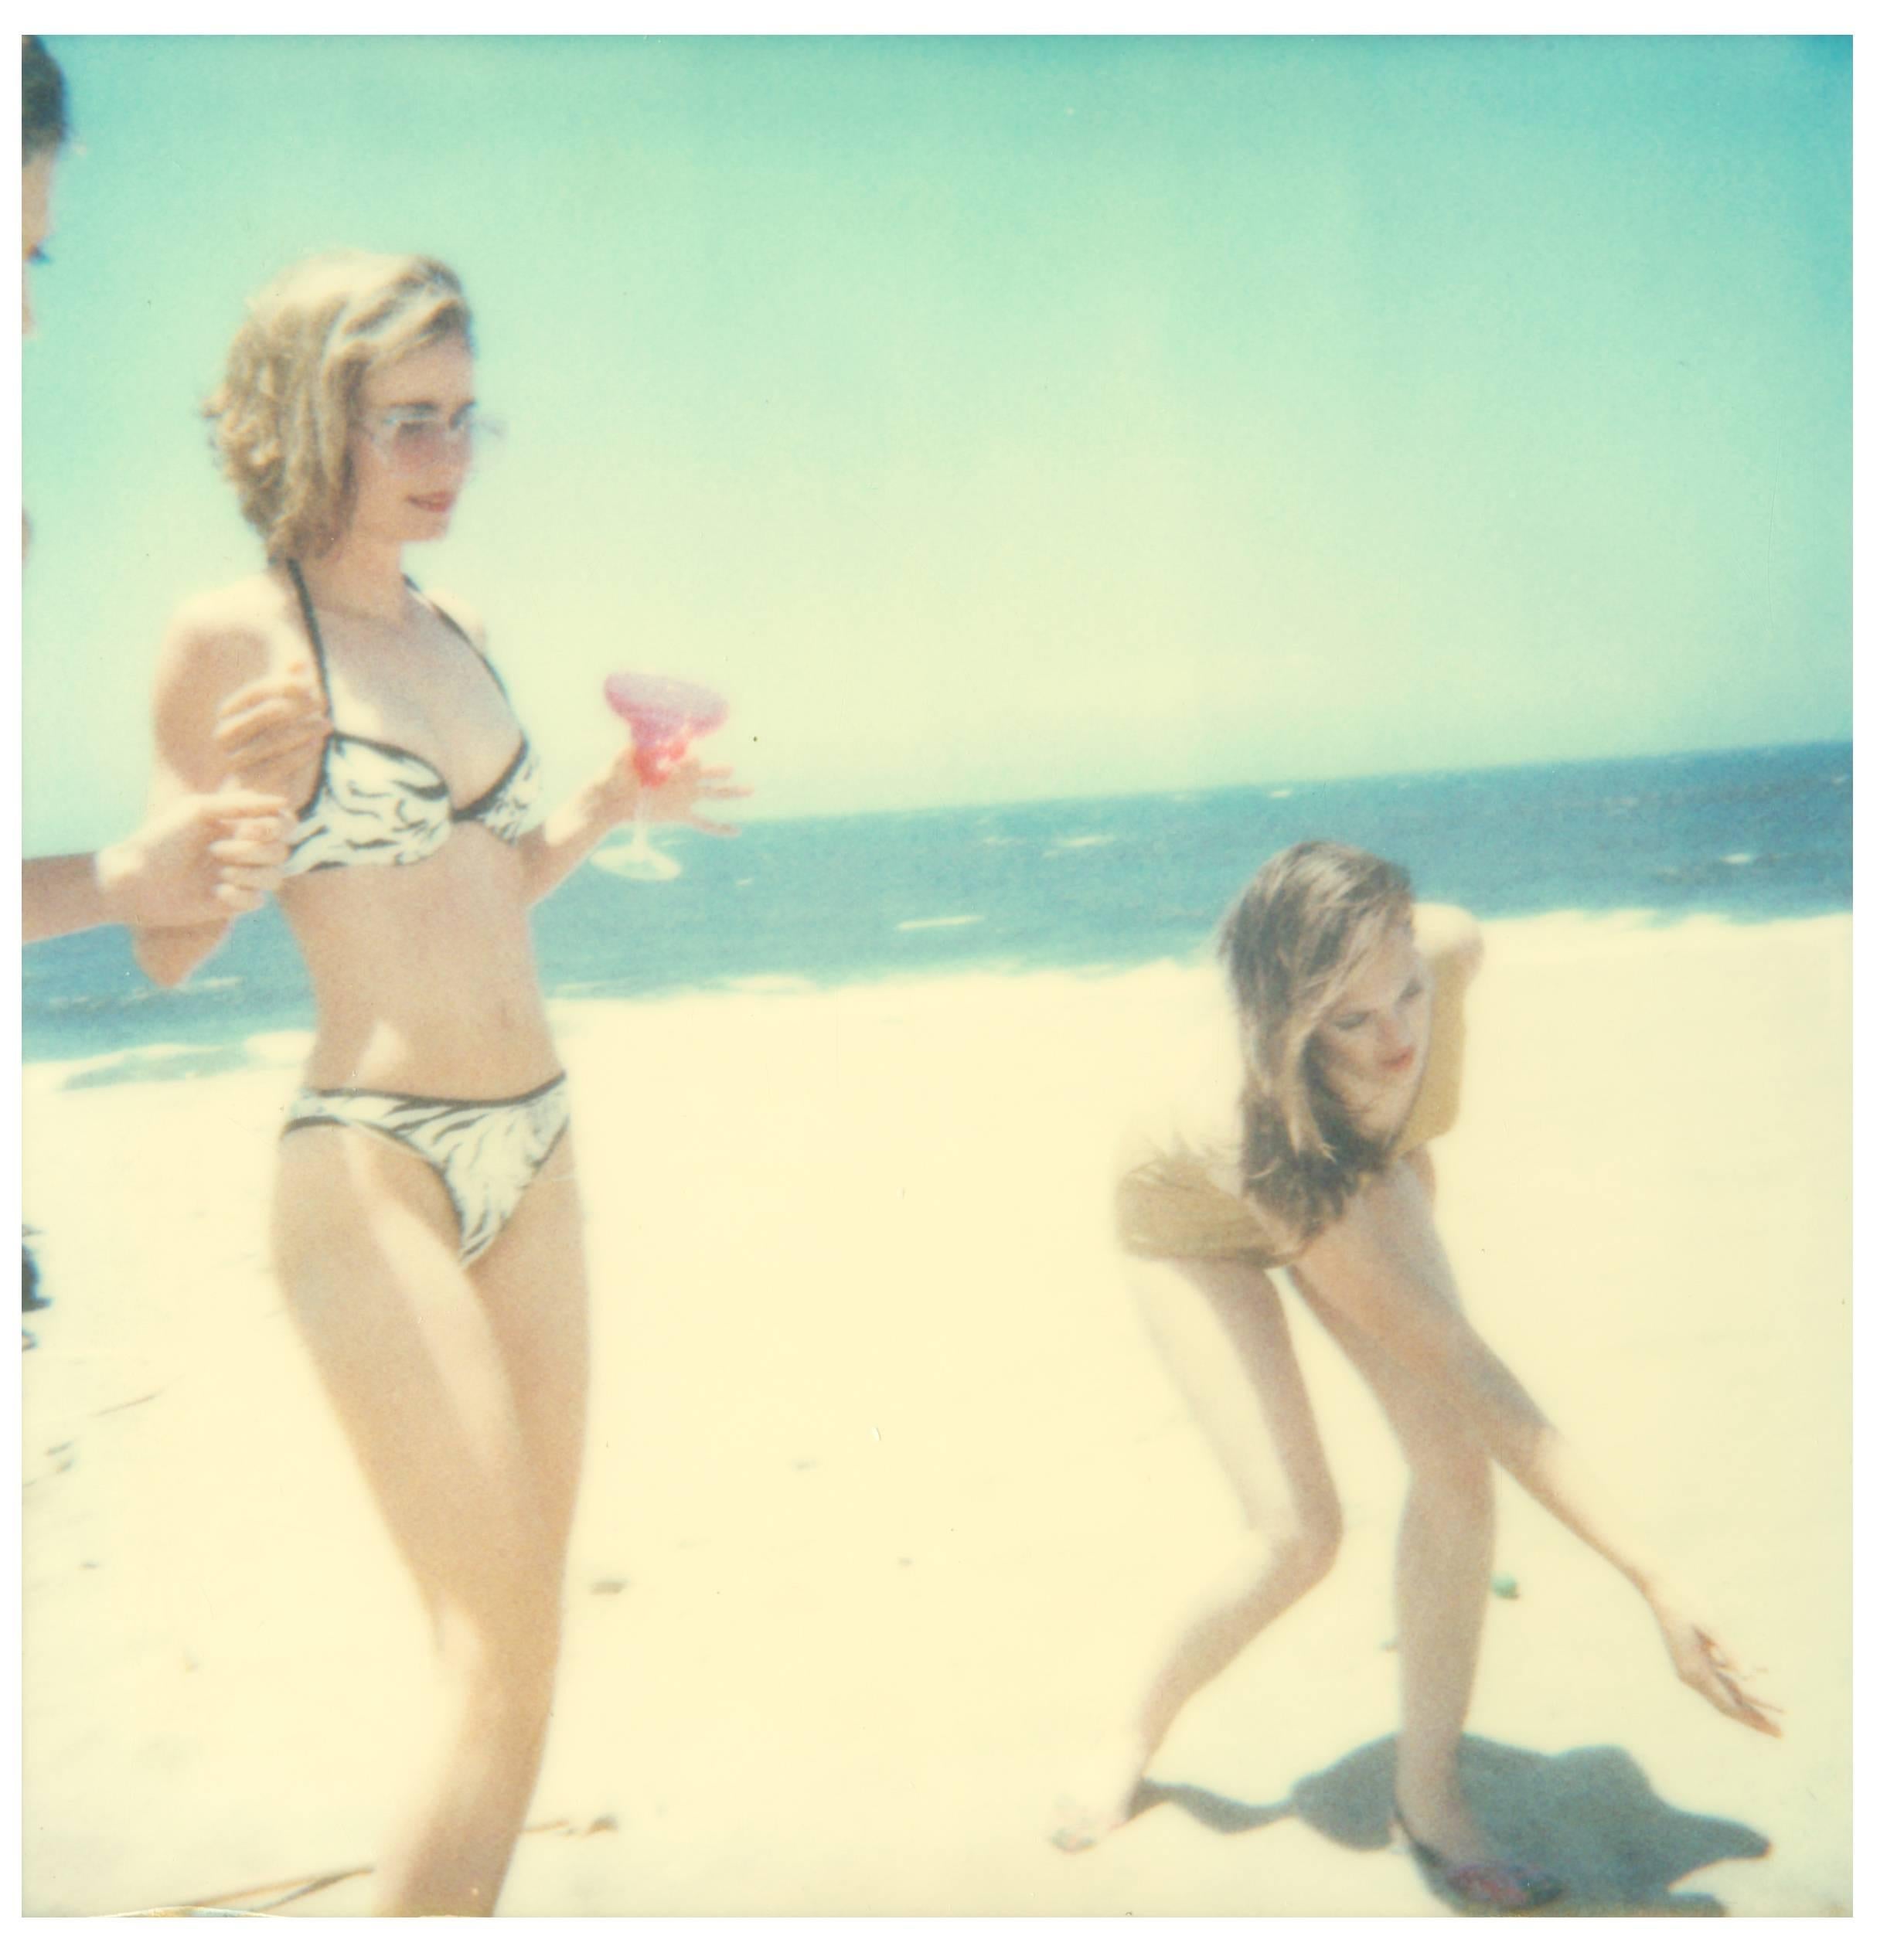 Stefanie Schneider Figurative Photograph - Untitled - Beachshoot with Radha Mitchell